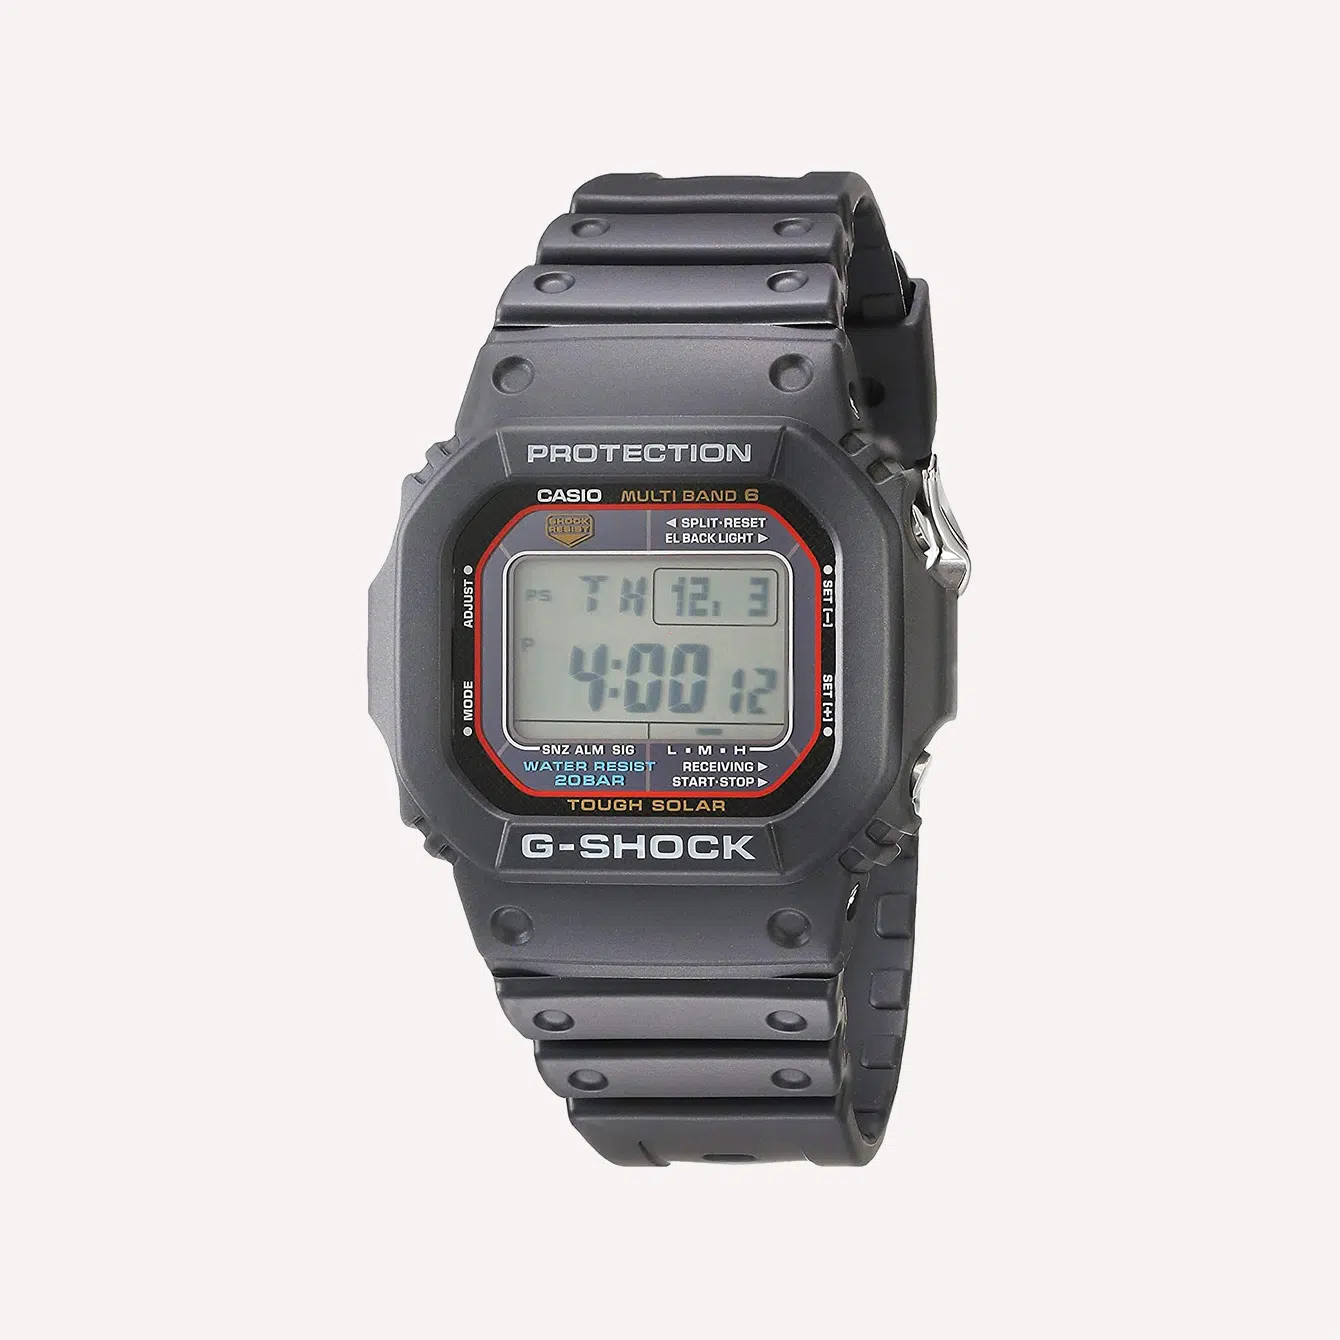 Casio Men_s G SHOCK GWM5610 1 Quartz Watch with Resin Strap Black